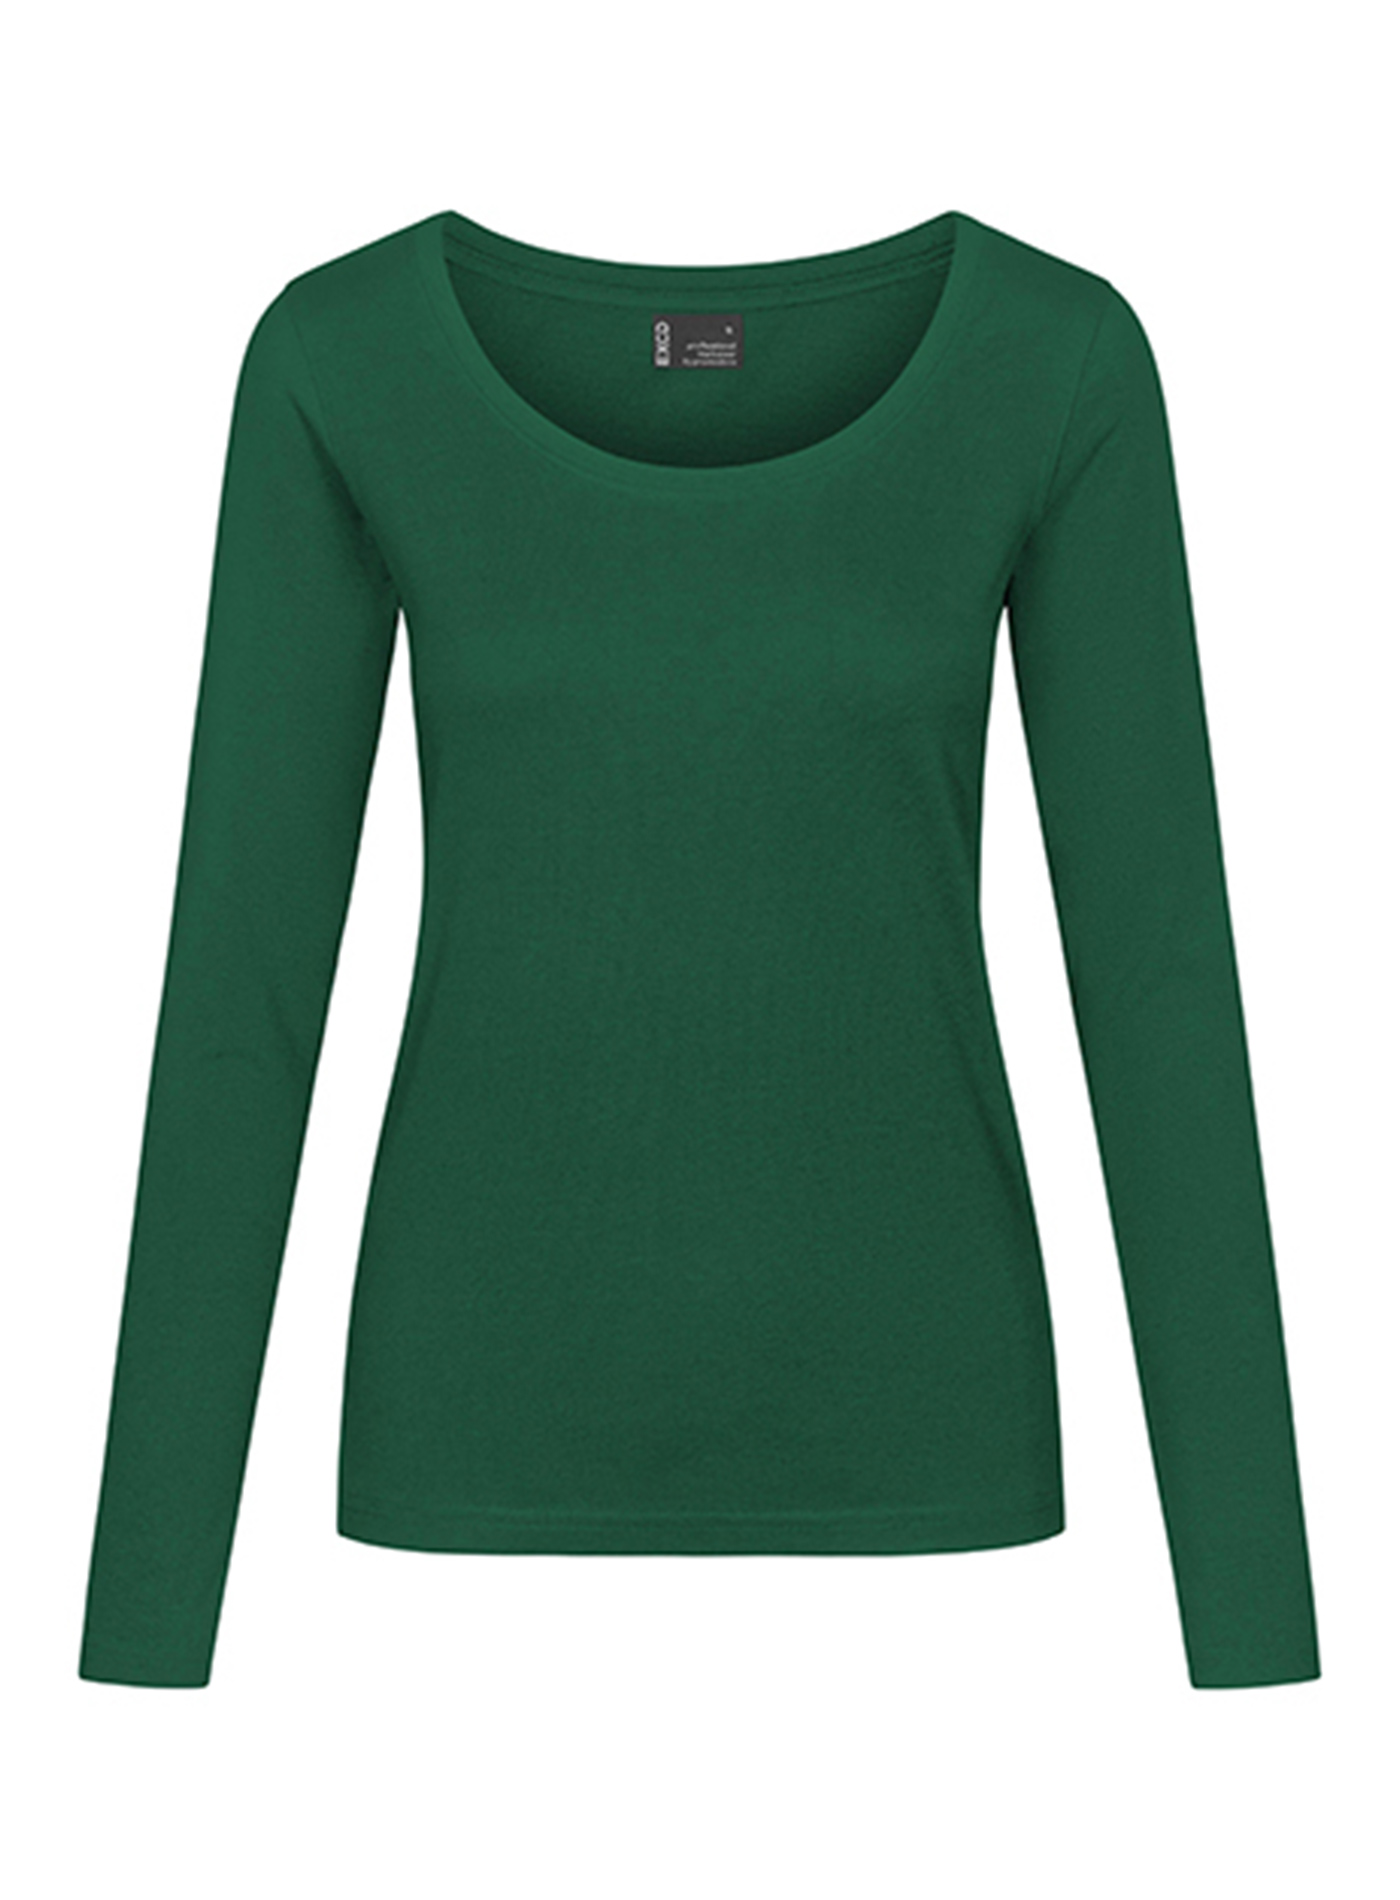 Dámské tričko s dlouhým rukávem Promodoro - Zelená XL